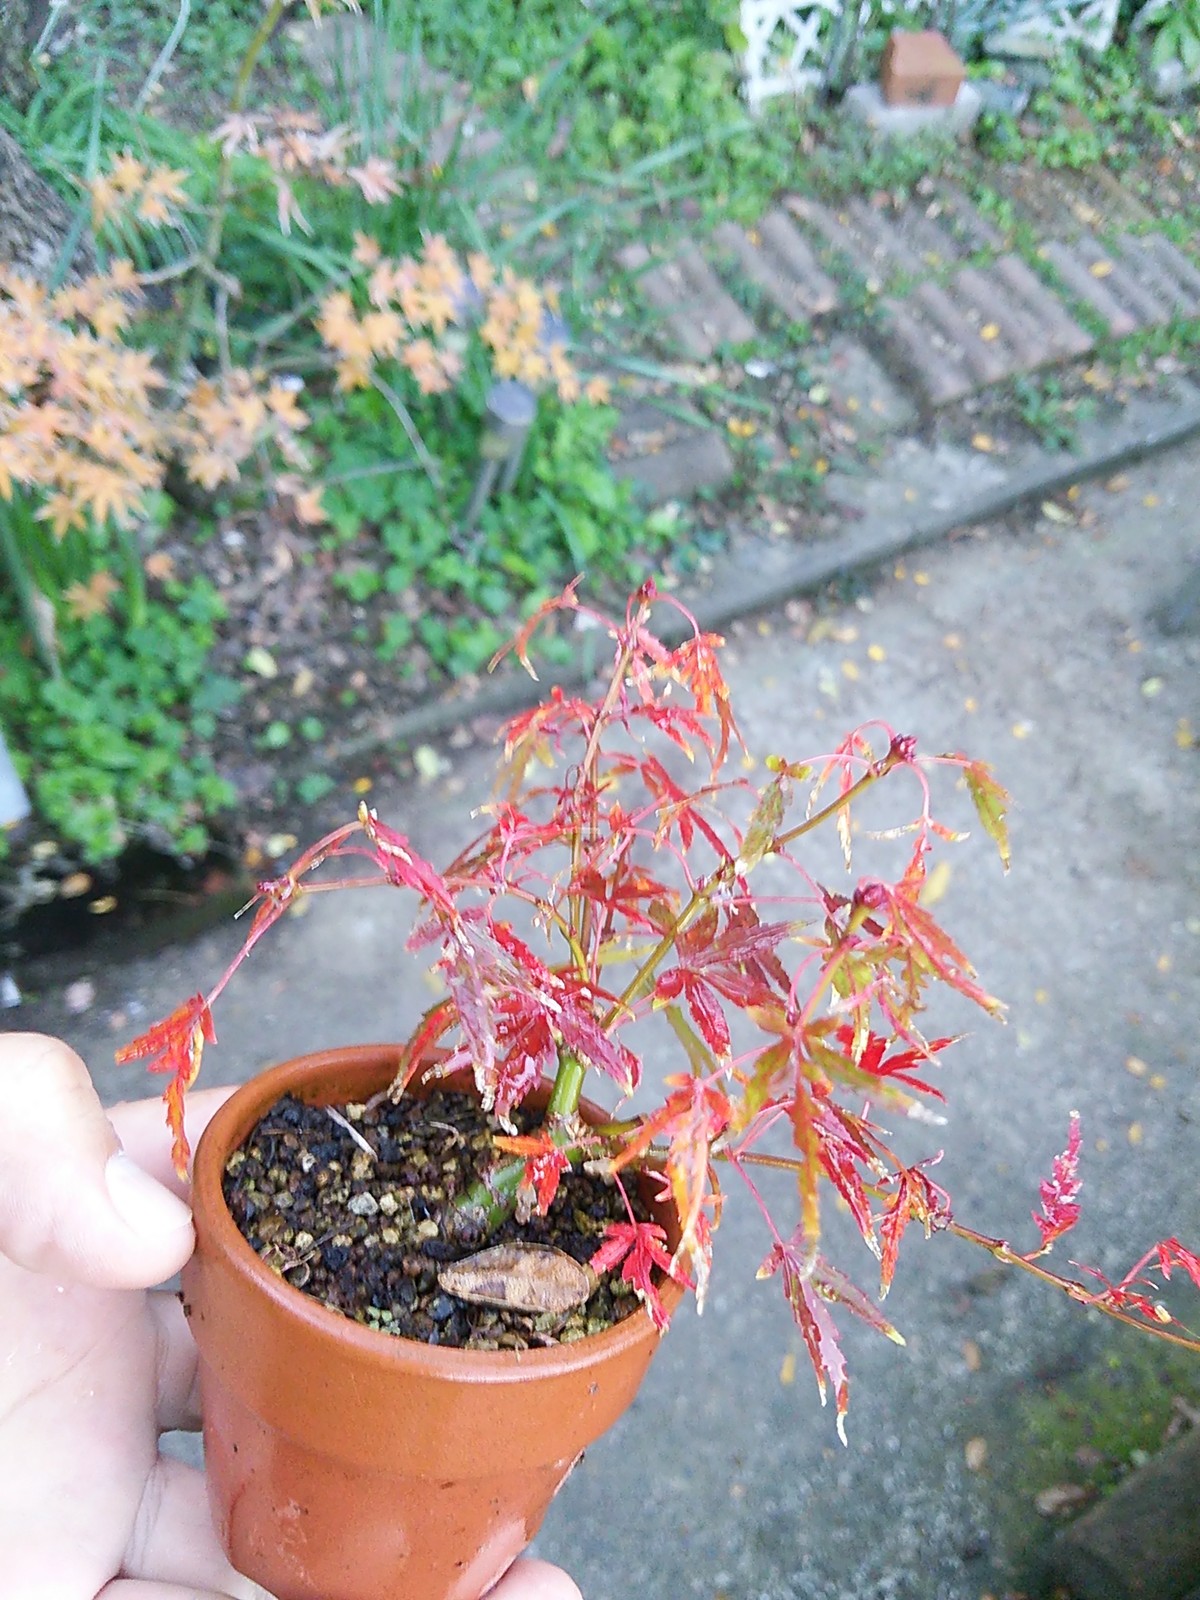 舞姫もみじと庭に挿し木した比較的小さな葉をしたﾔﾏﾓﾐｼﾞの紅葉 盆栽擬き日記